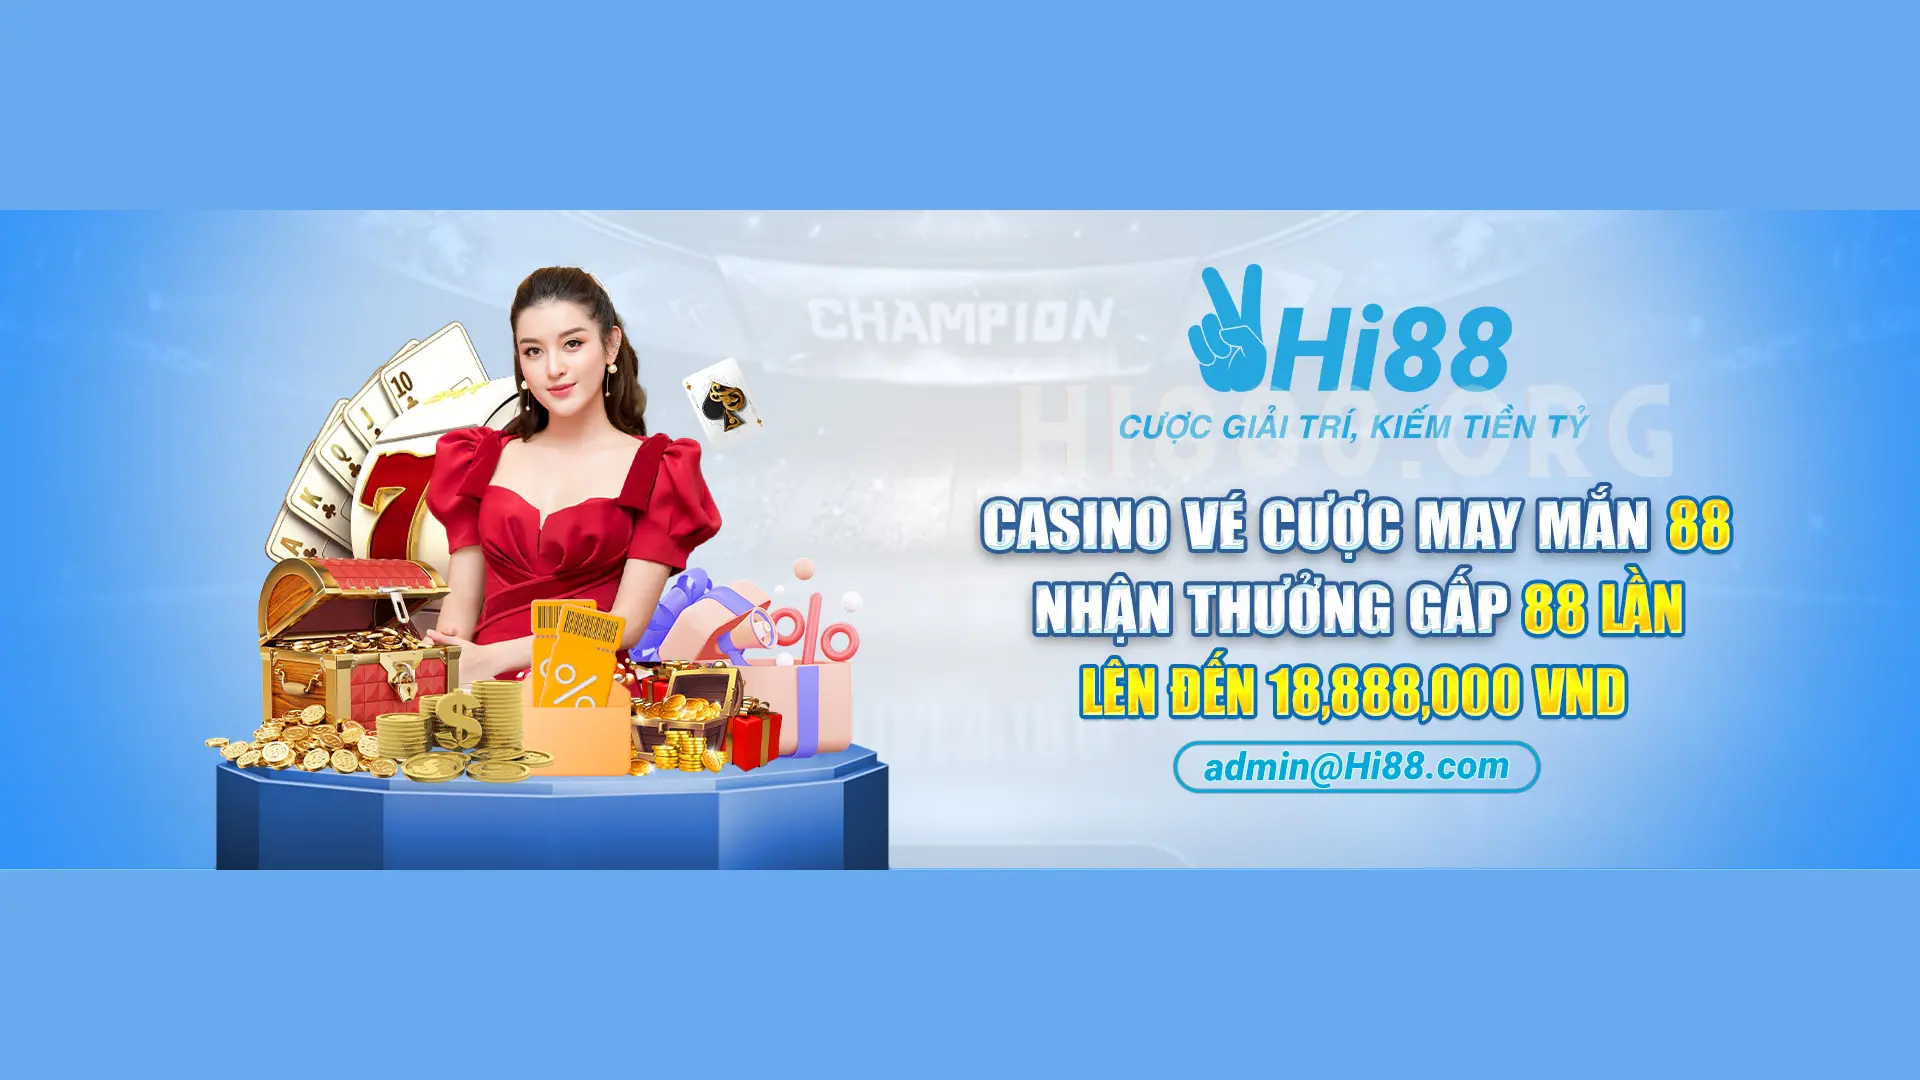 Tổng hợp khuyến mãi hot cho casino Hi88 - 2